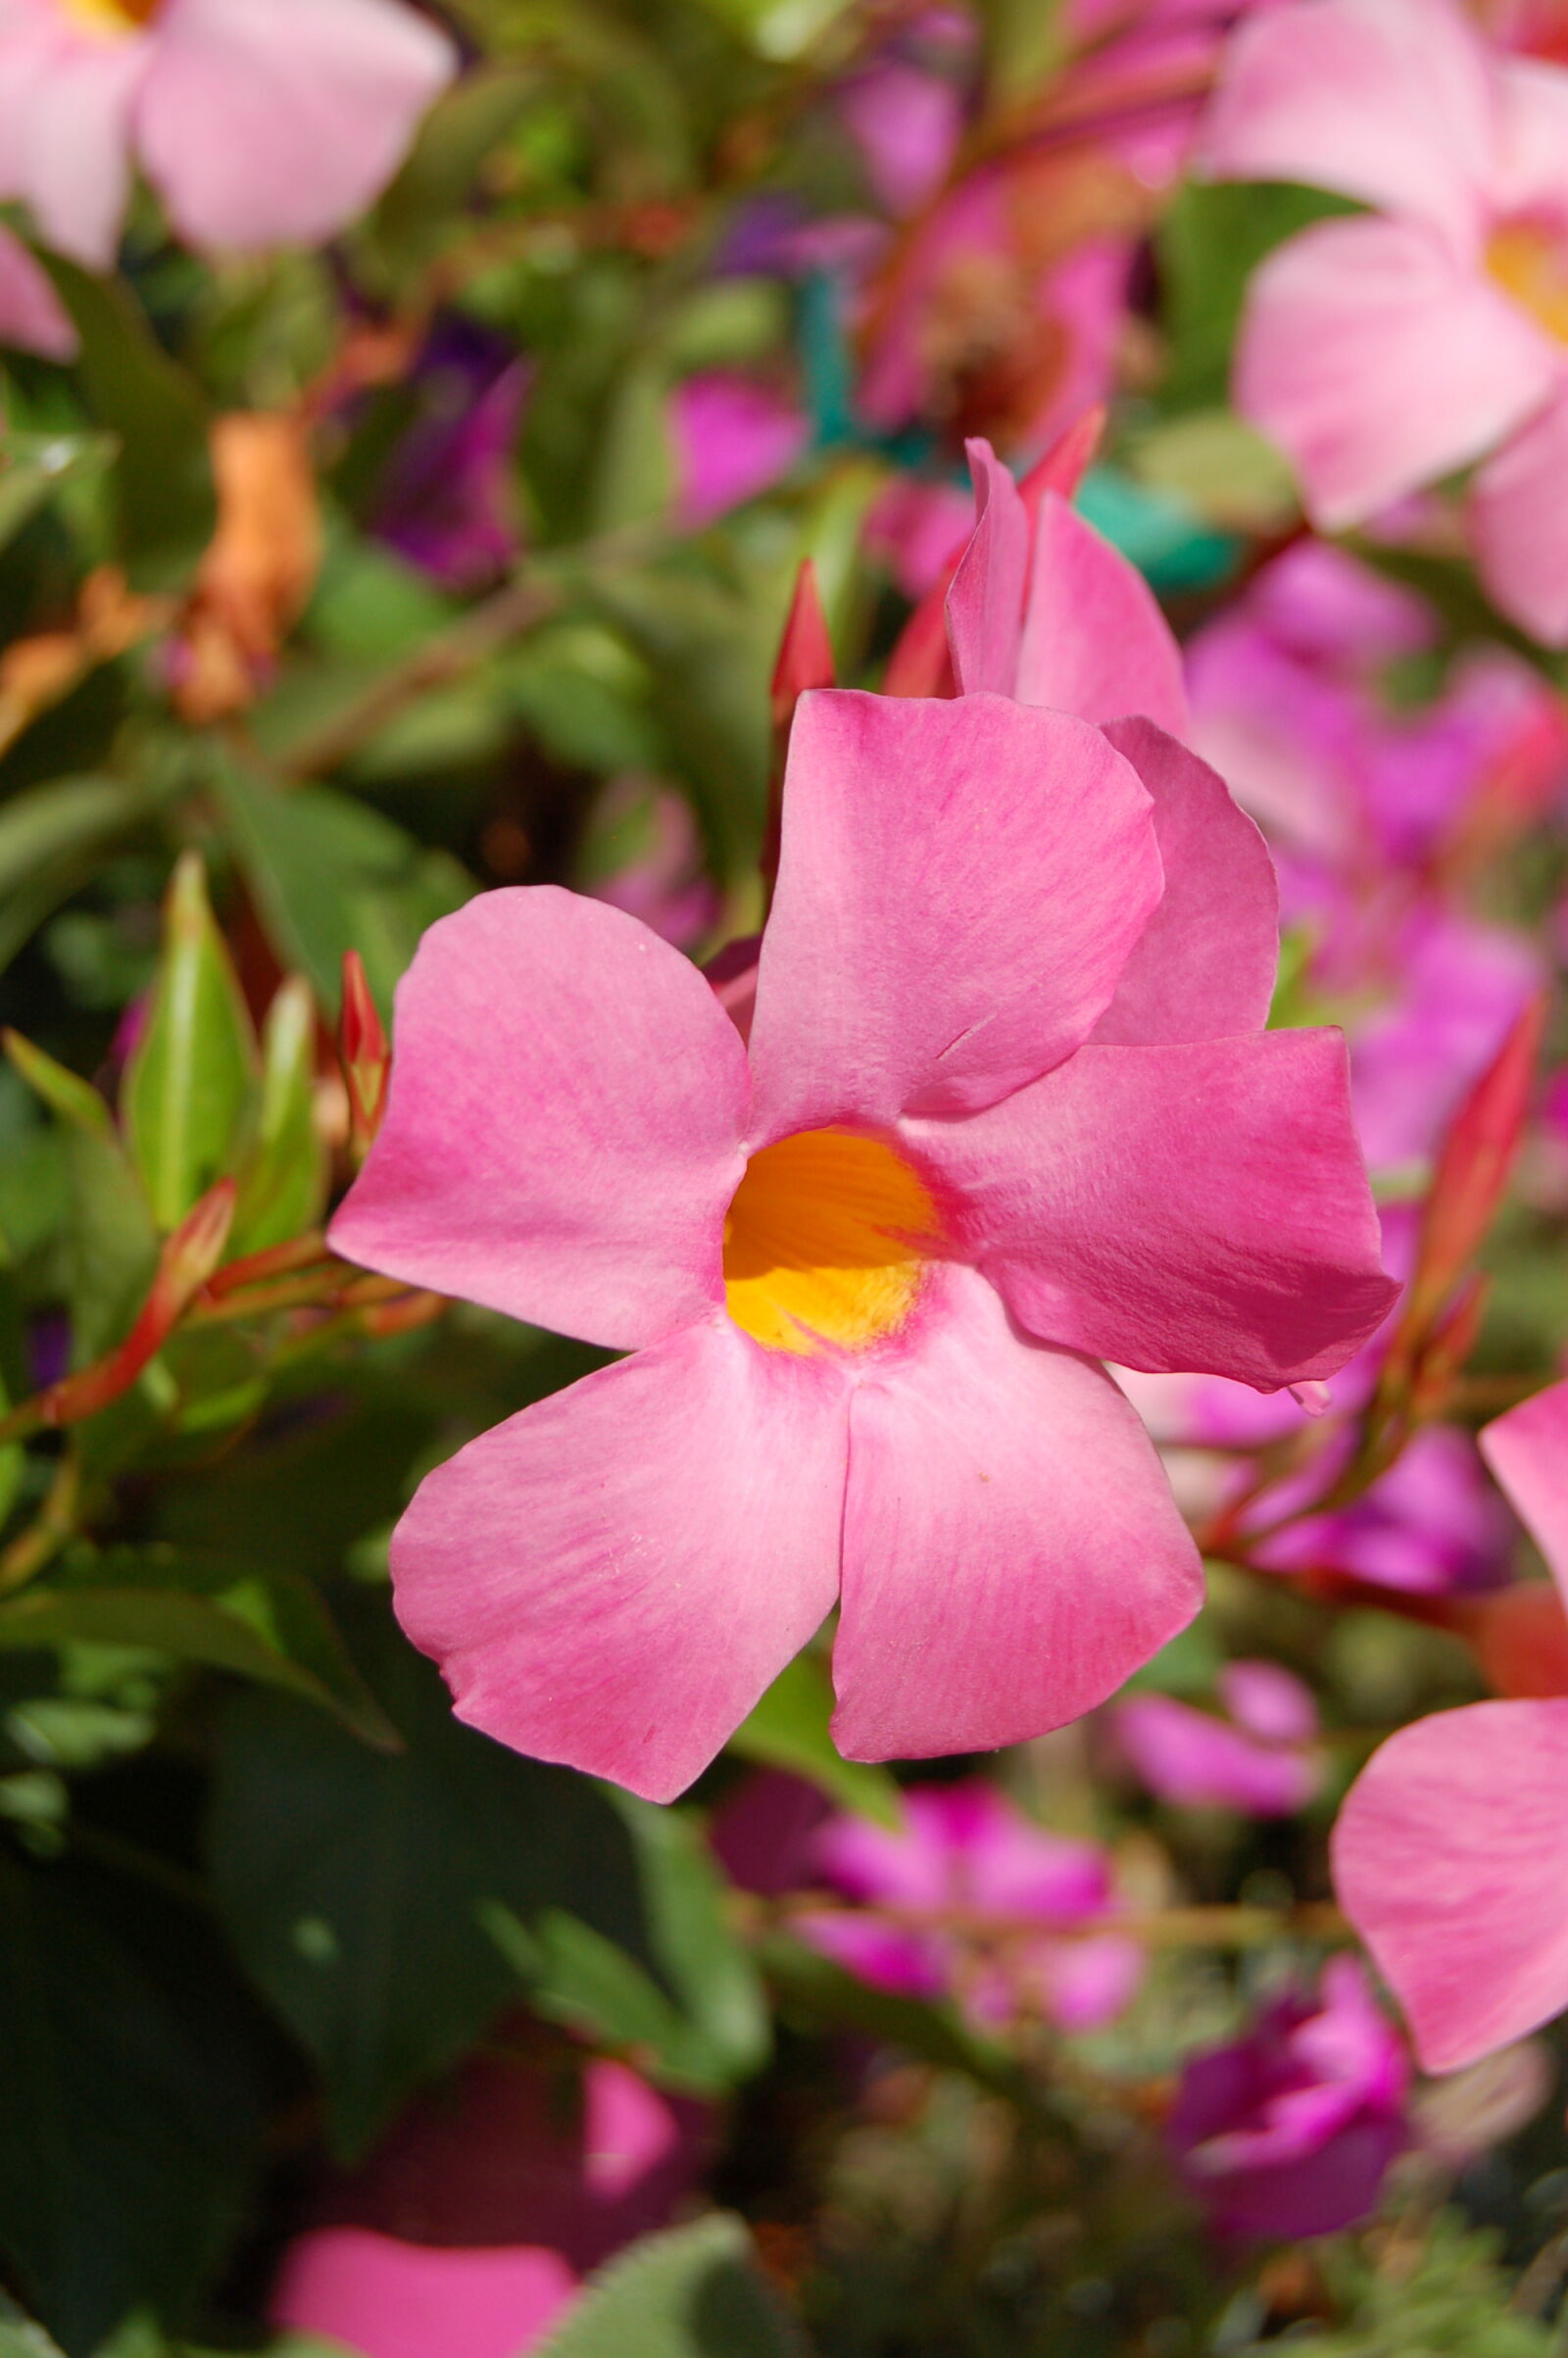 Nikon D50 + AF-S DX Zoom-Nikkor 18-55mm f/3.5-5.6G ED sample photo. Flower, flowers, pink, pink photography